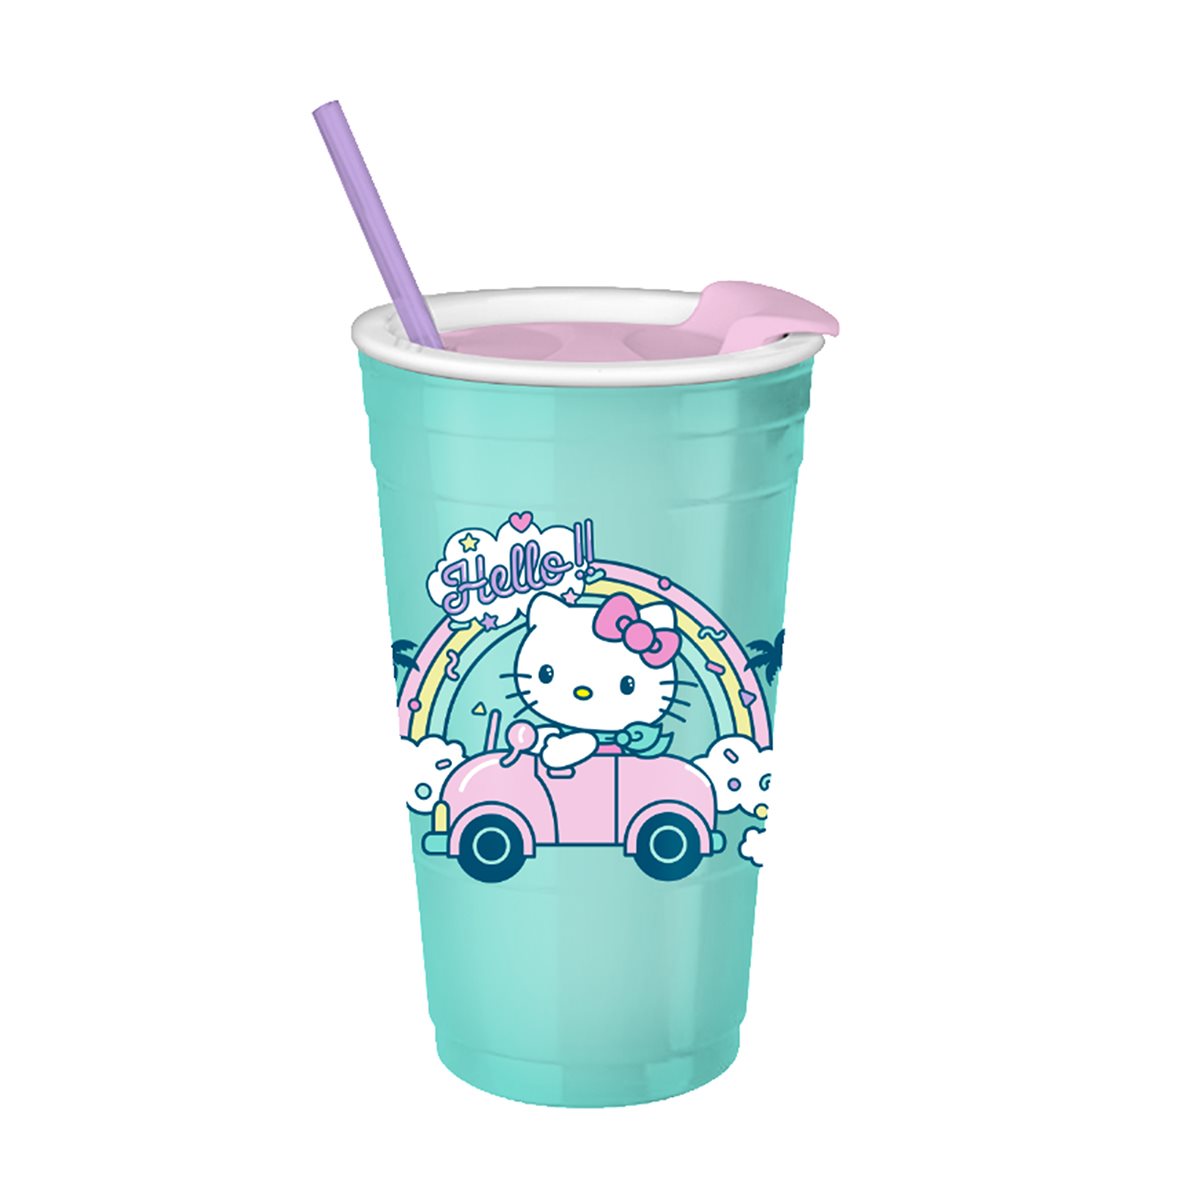 Sanrio Hello Kitty Travel Tumbler with Straw 32oz